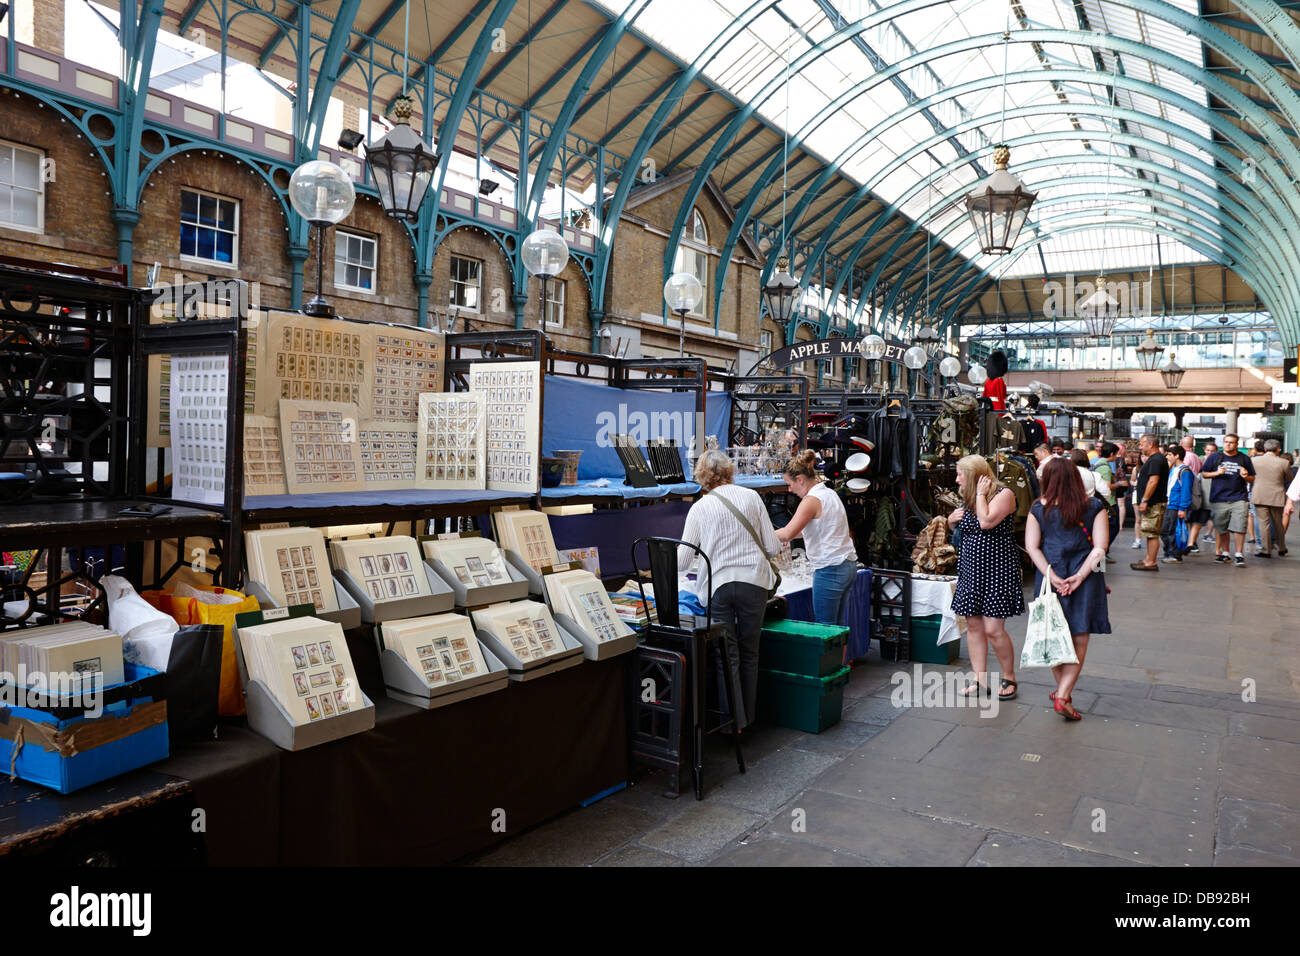 El mercado de apple dentro del mercado de Covent Garden de Londres Inglaterra Foto de stock